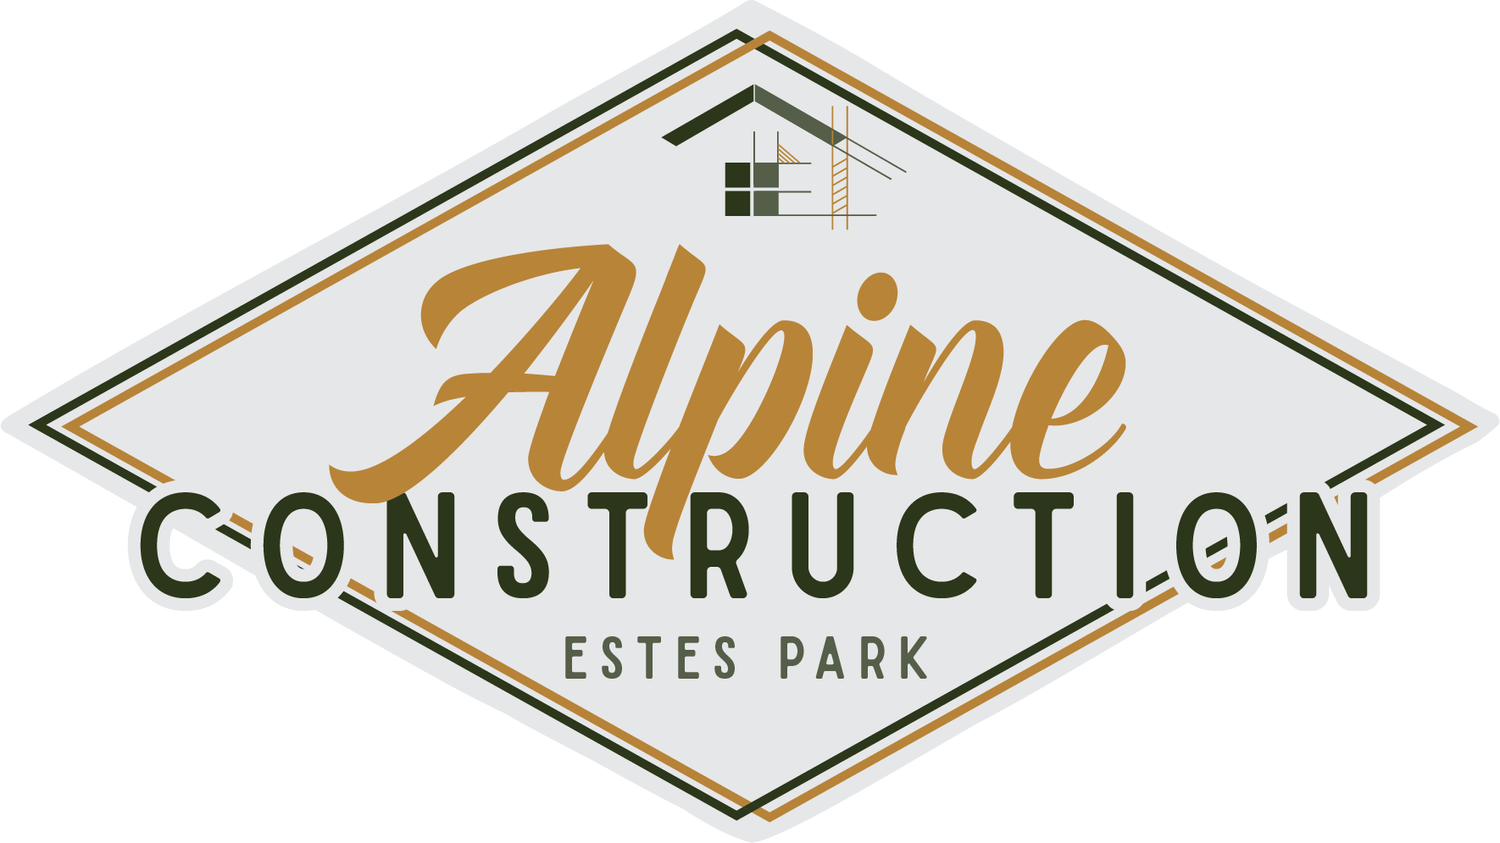 Estes Park Alpine Construction